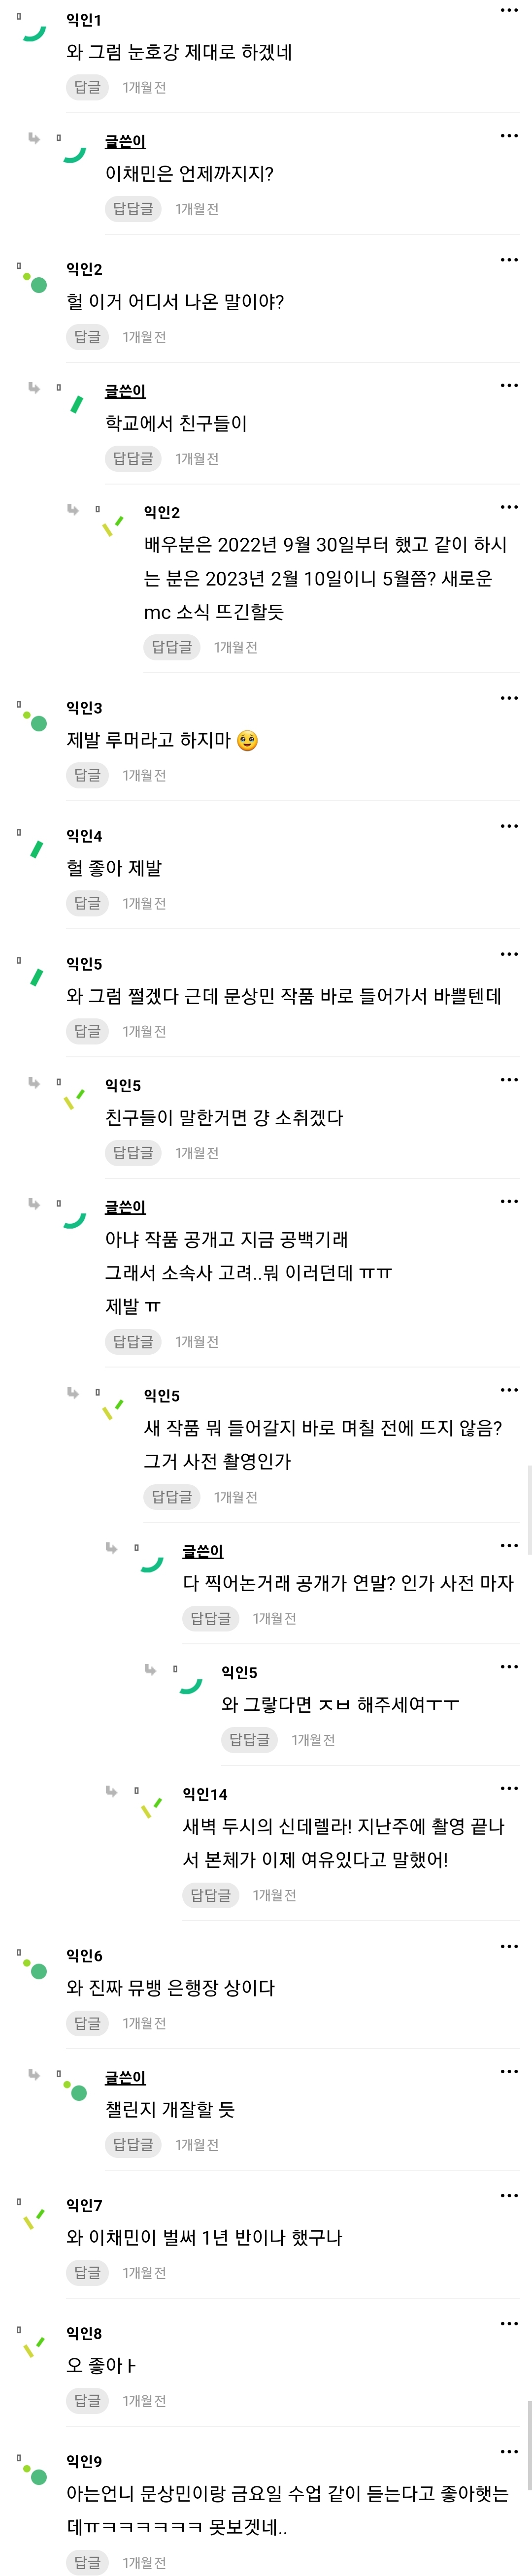 [잡담] 문상민 뮤뱅엠씨 예언글 진짜라니 ㅋㅋㅋㅋㅋㅋㅋ | 인스티즈